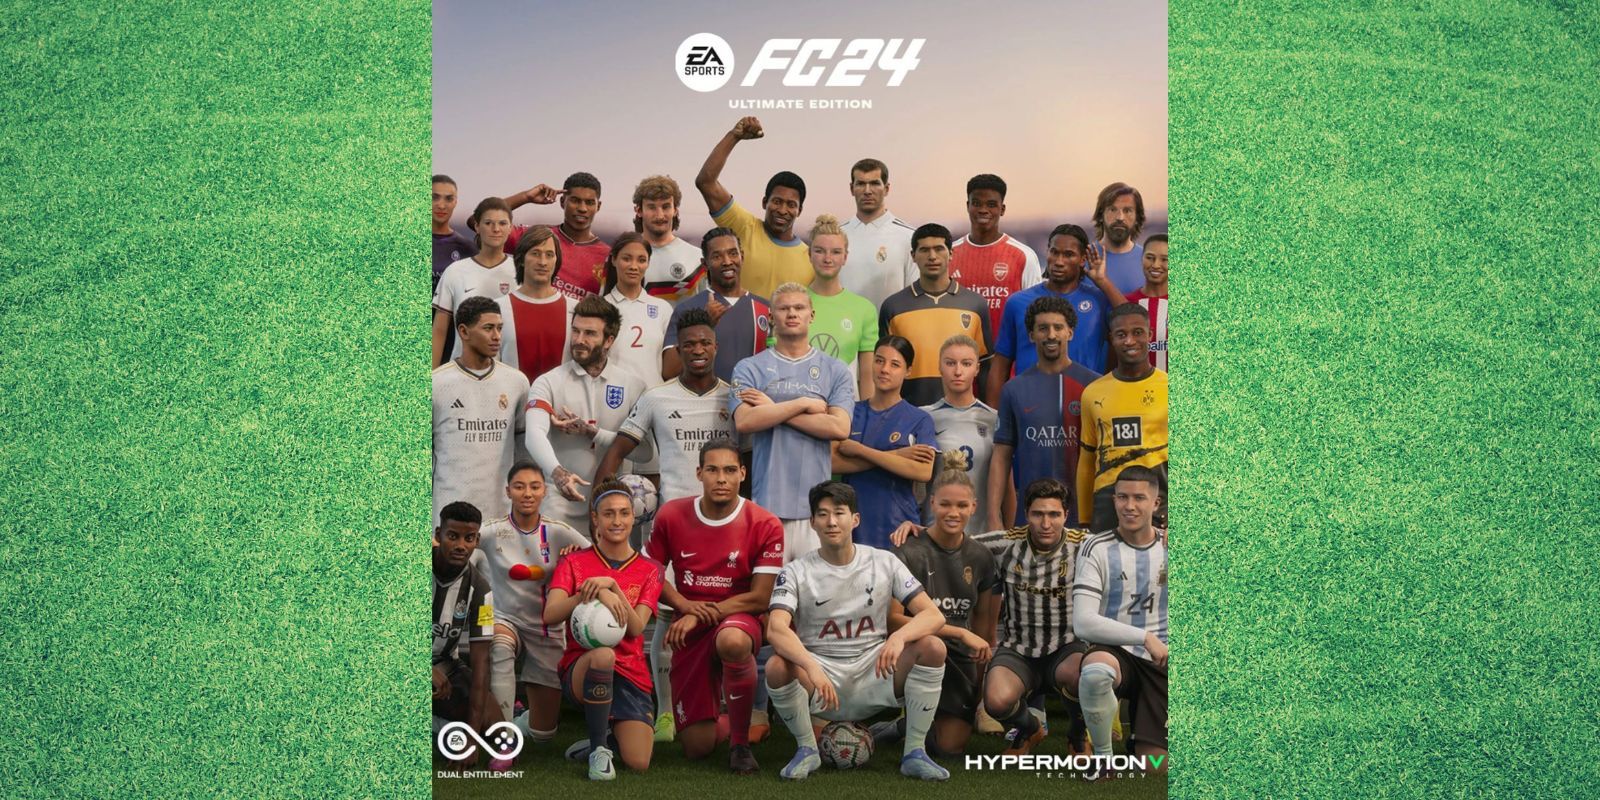 EA Sports FC24 Ultimate Edition Cover auf einem Grashintergrund